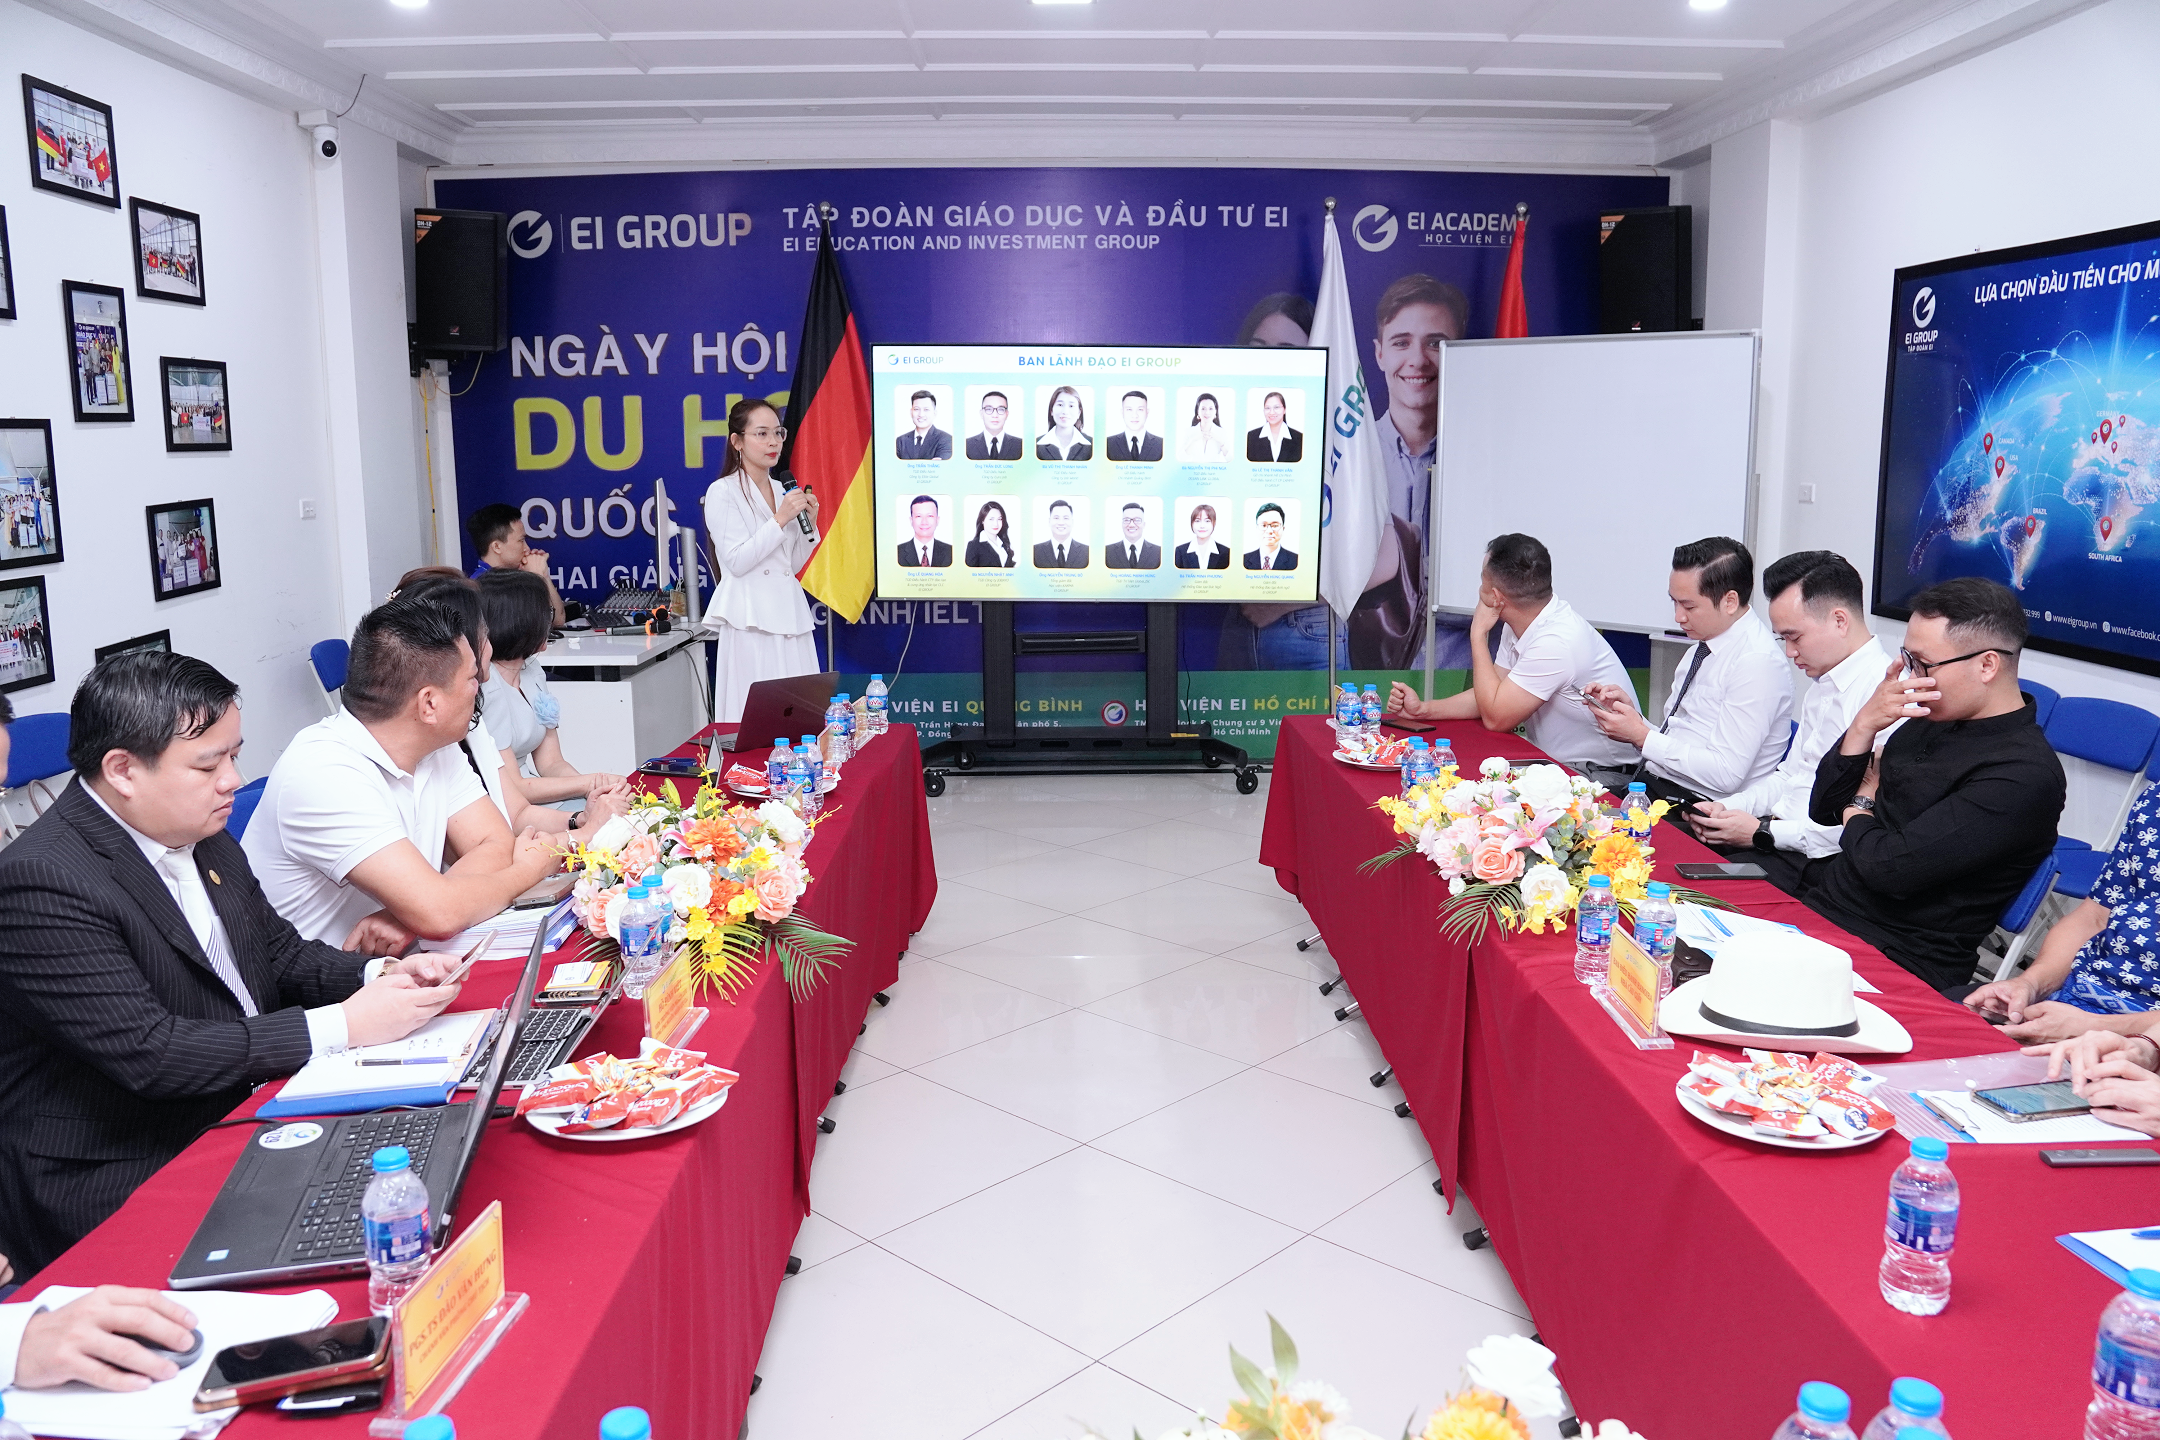 Chị Nguyễn Thị Thu Vân, Thành viên HĐQT chia sẻ về Tập đoàn Giáo dục và Đầu tư EI